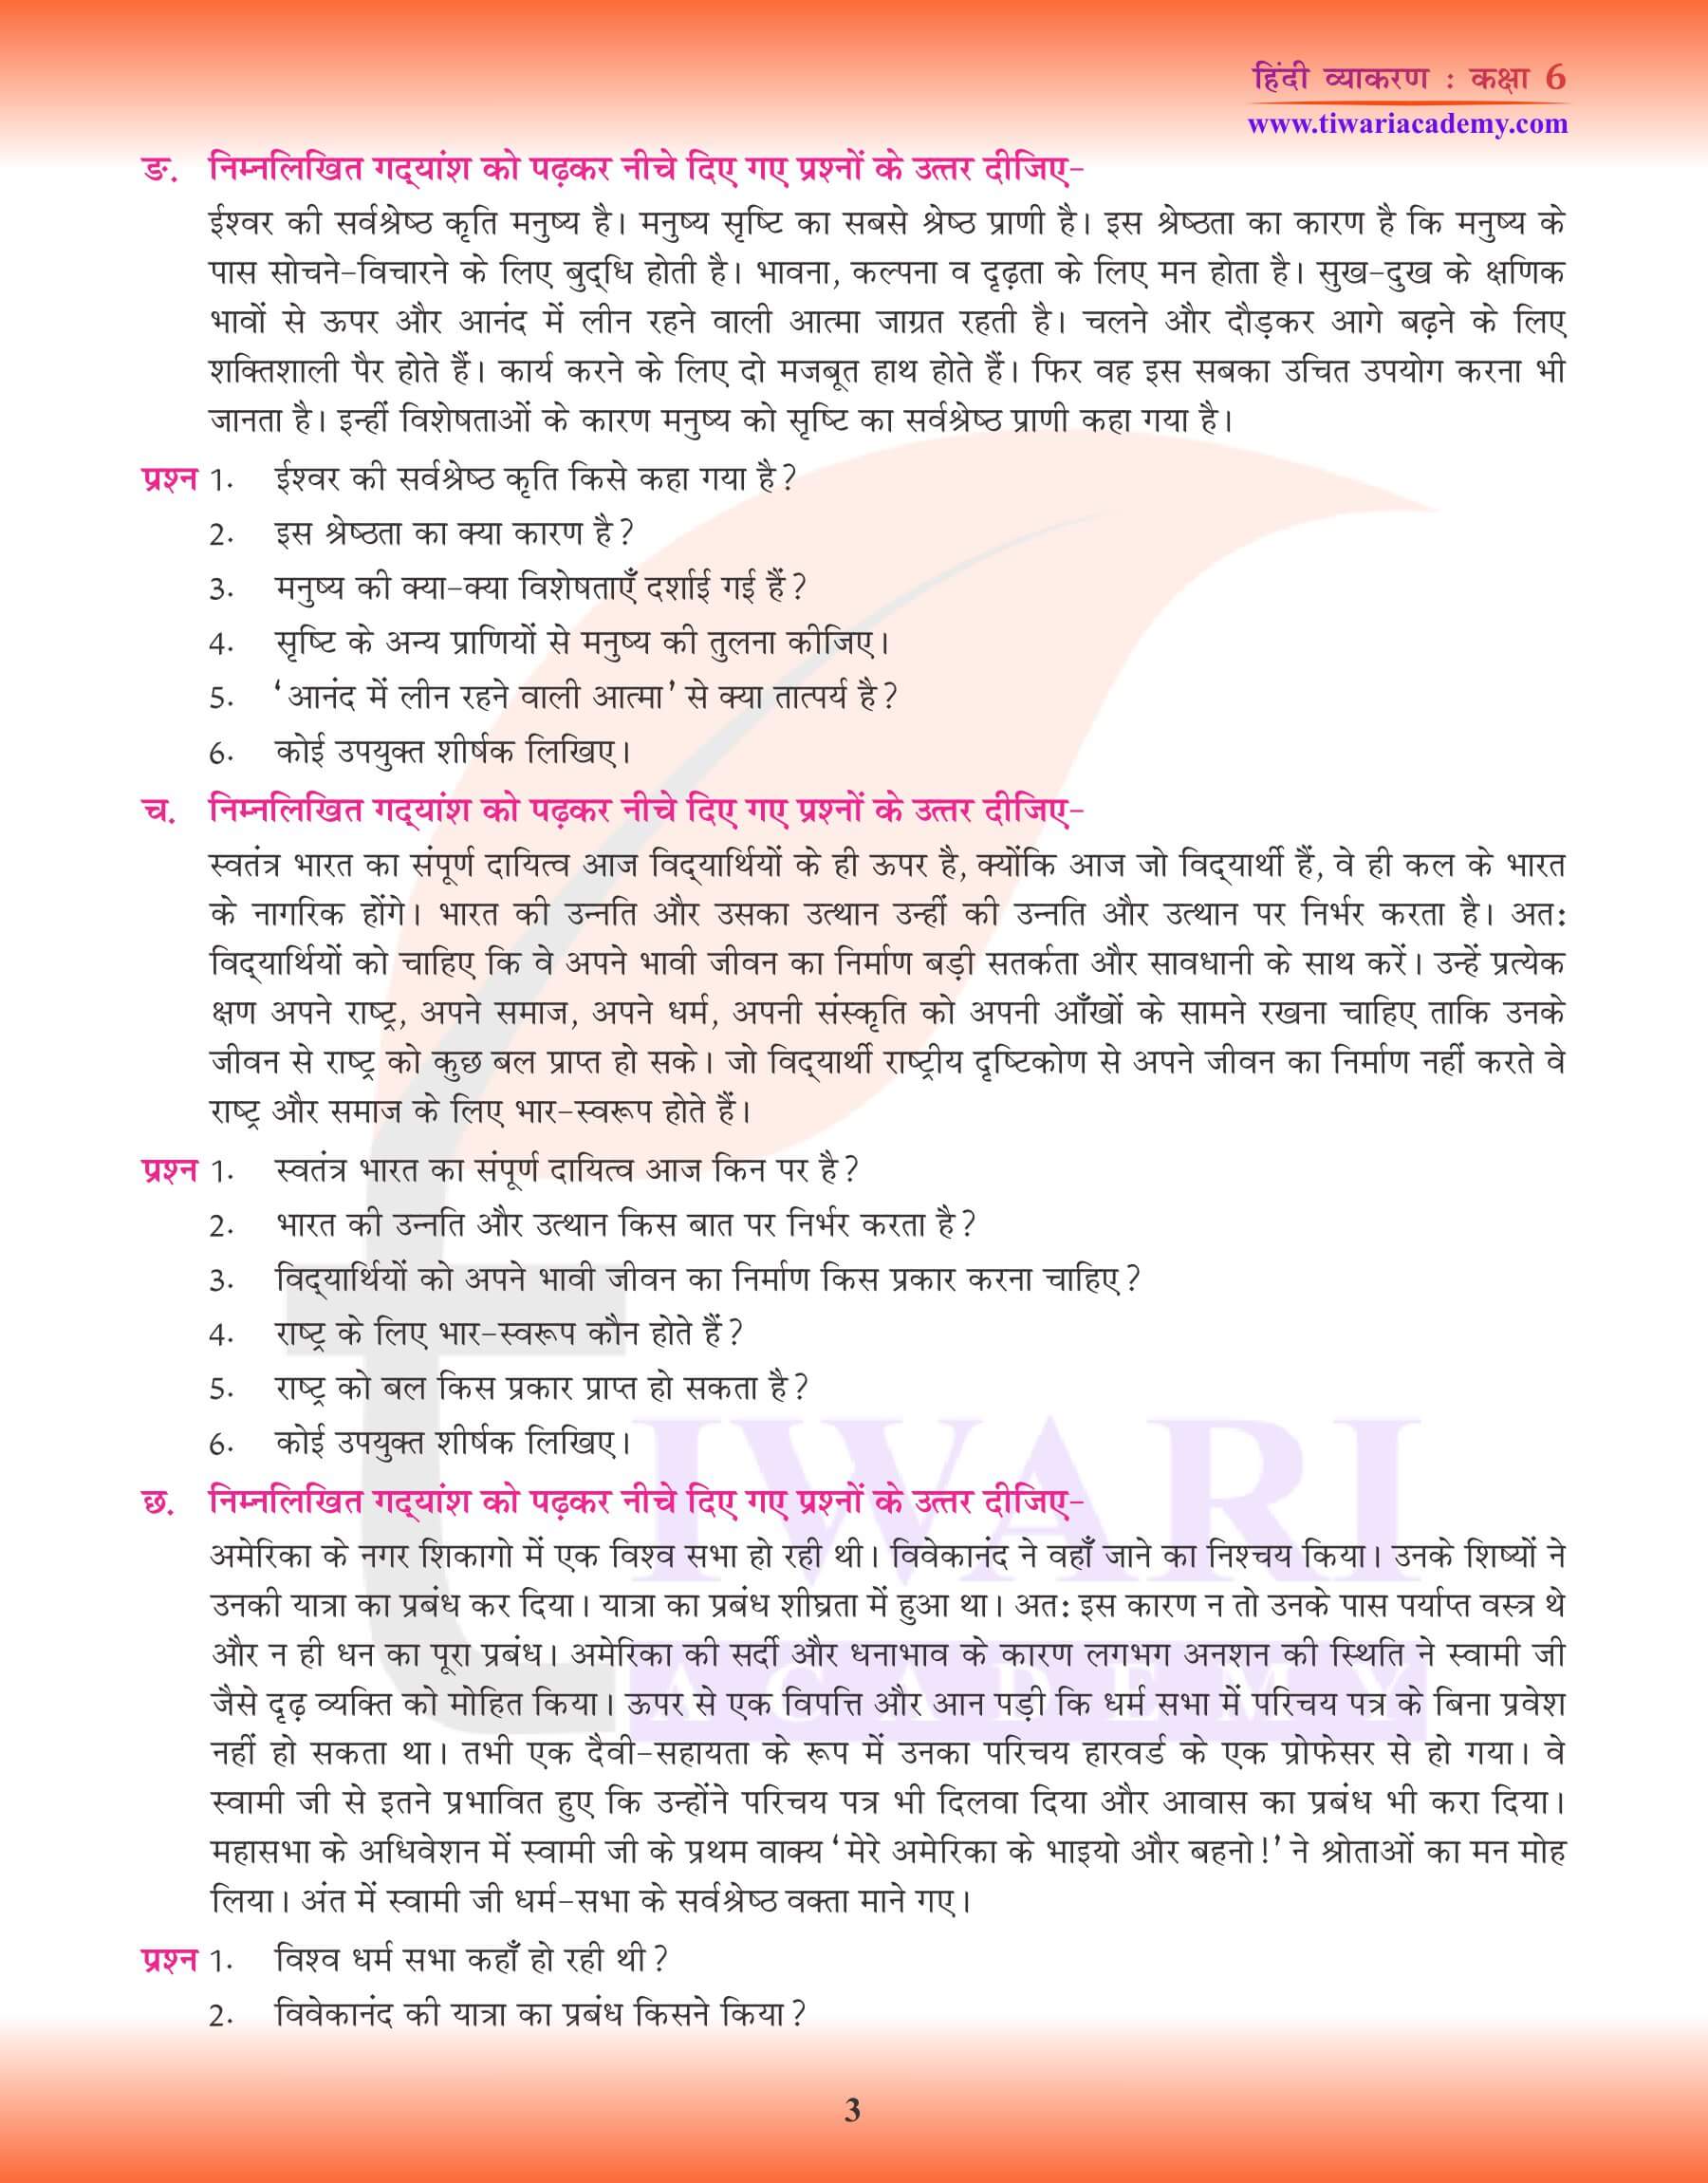 कक्षा 6 हिंदी व्याकरण अपठित गद्यांश के उत्तर